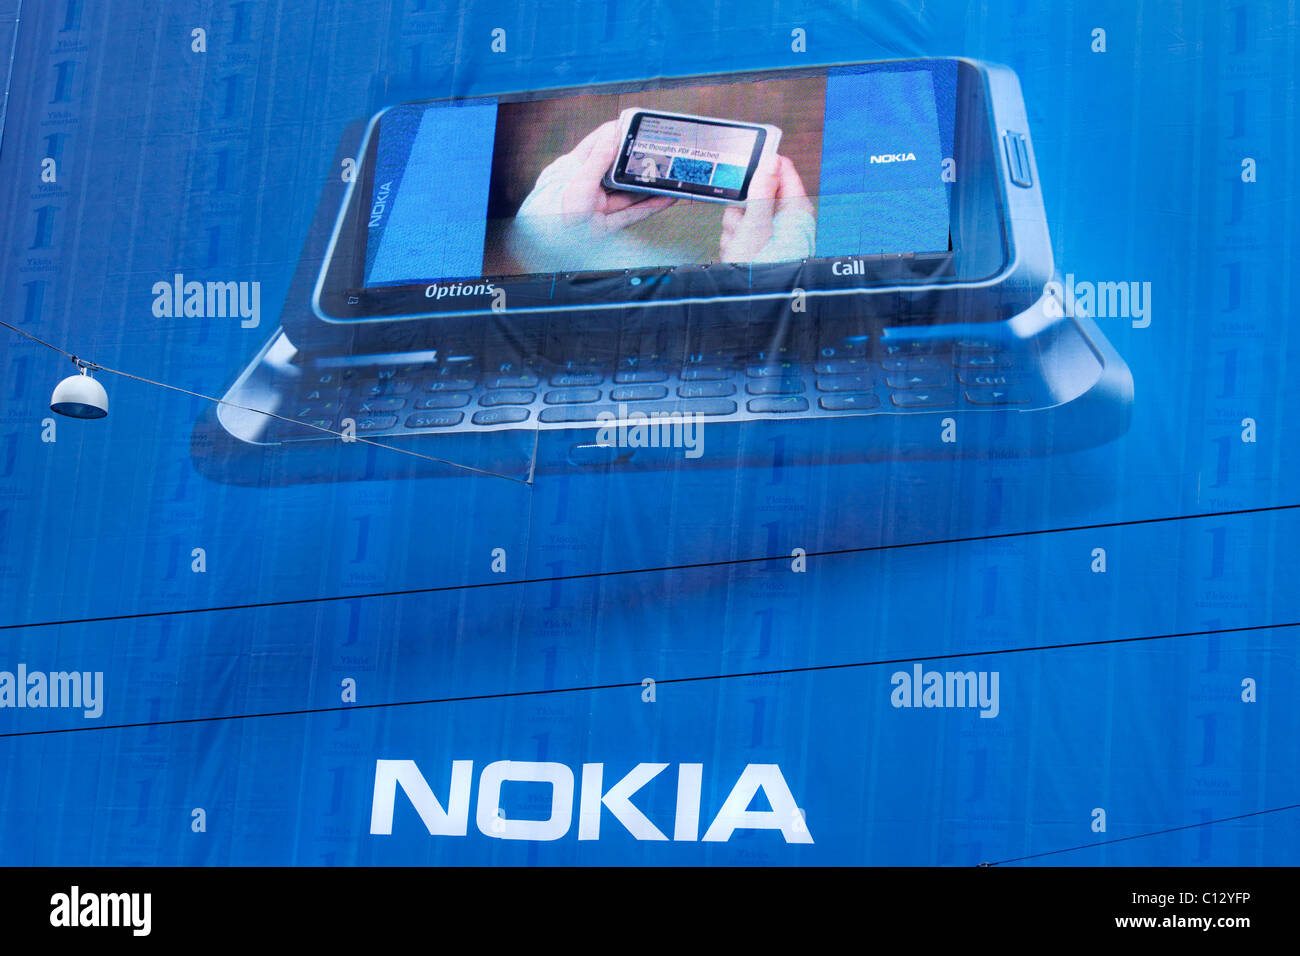 Nokia e7 - Smartphone Anzeige in Helsinki Stockfotografie - Alamy